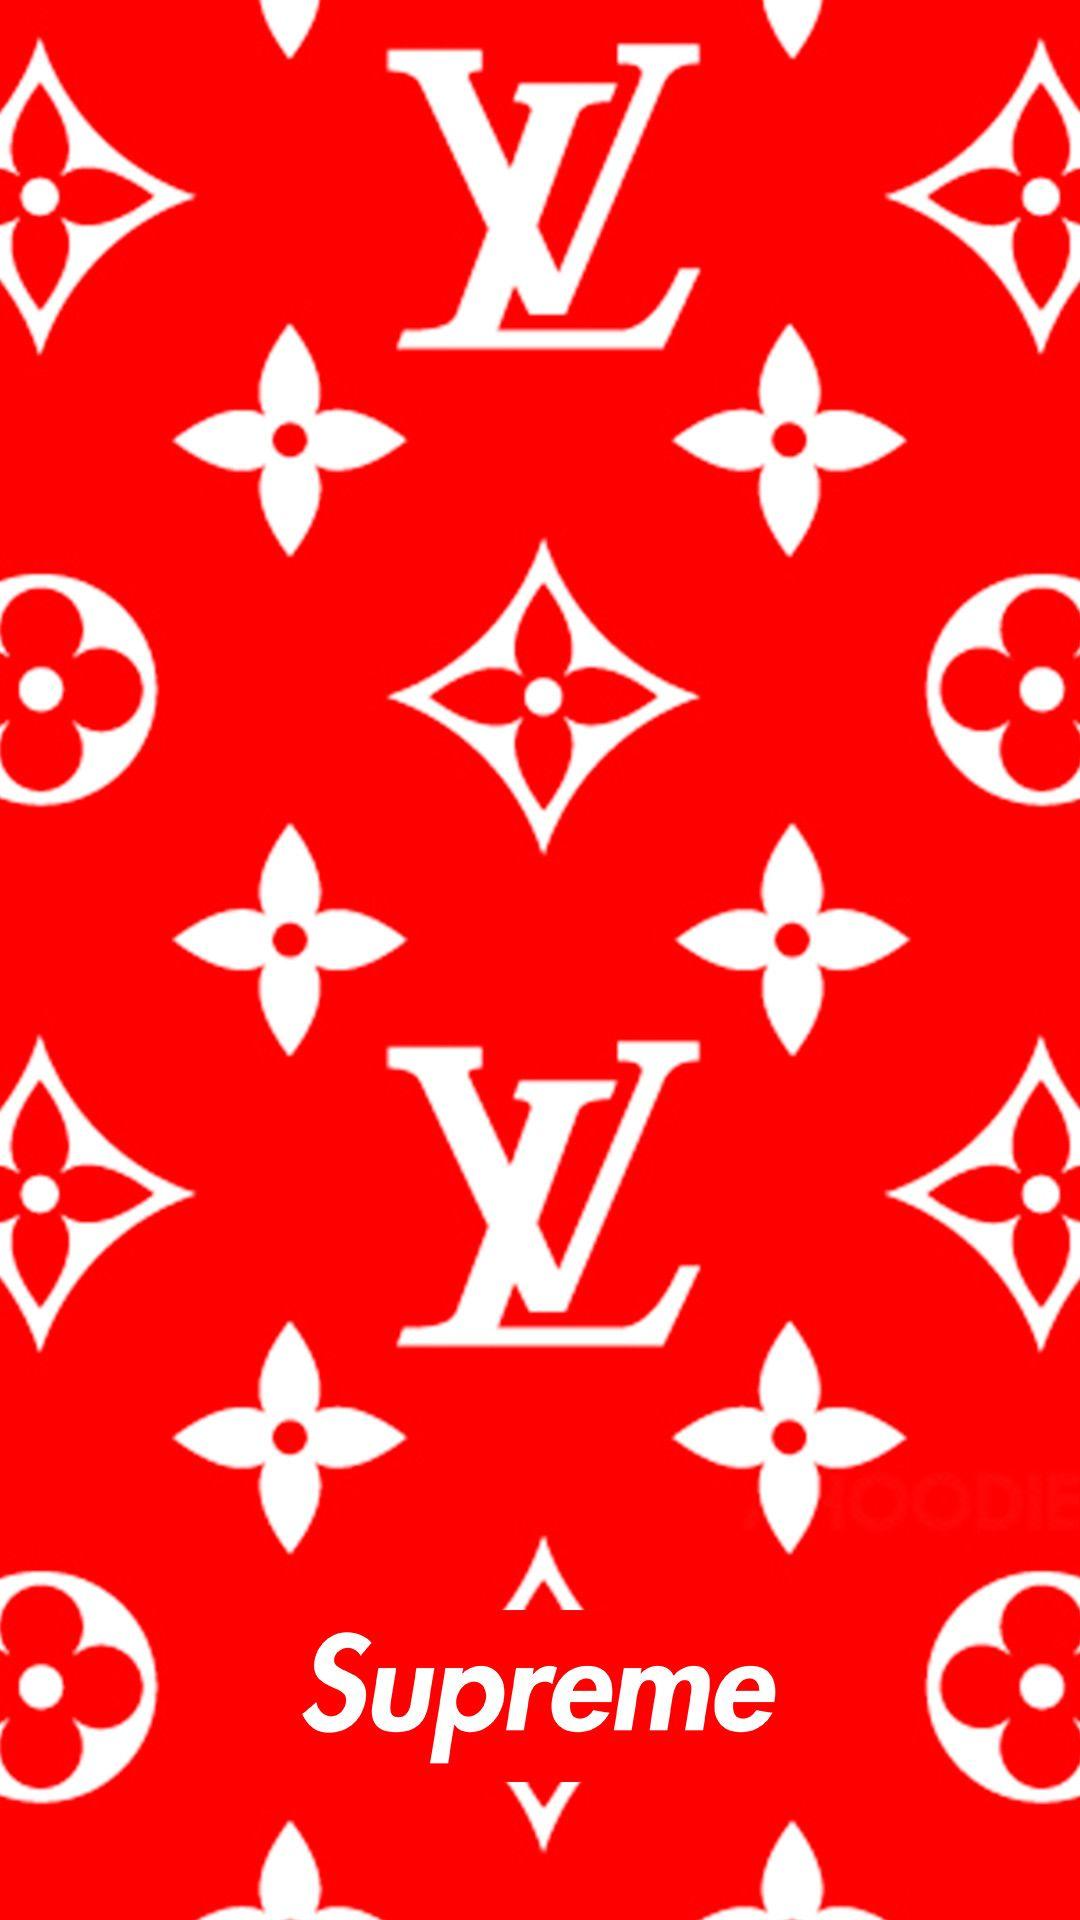 Louis Vuitton Supreme Logo - Download Supreme x louis vuitton 1080 x 1920 Wallpaper